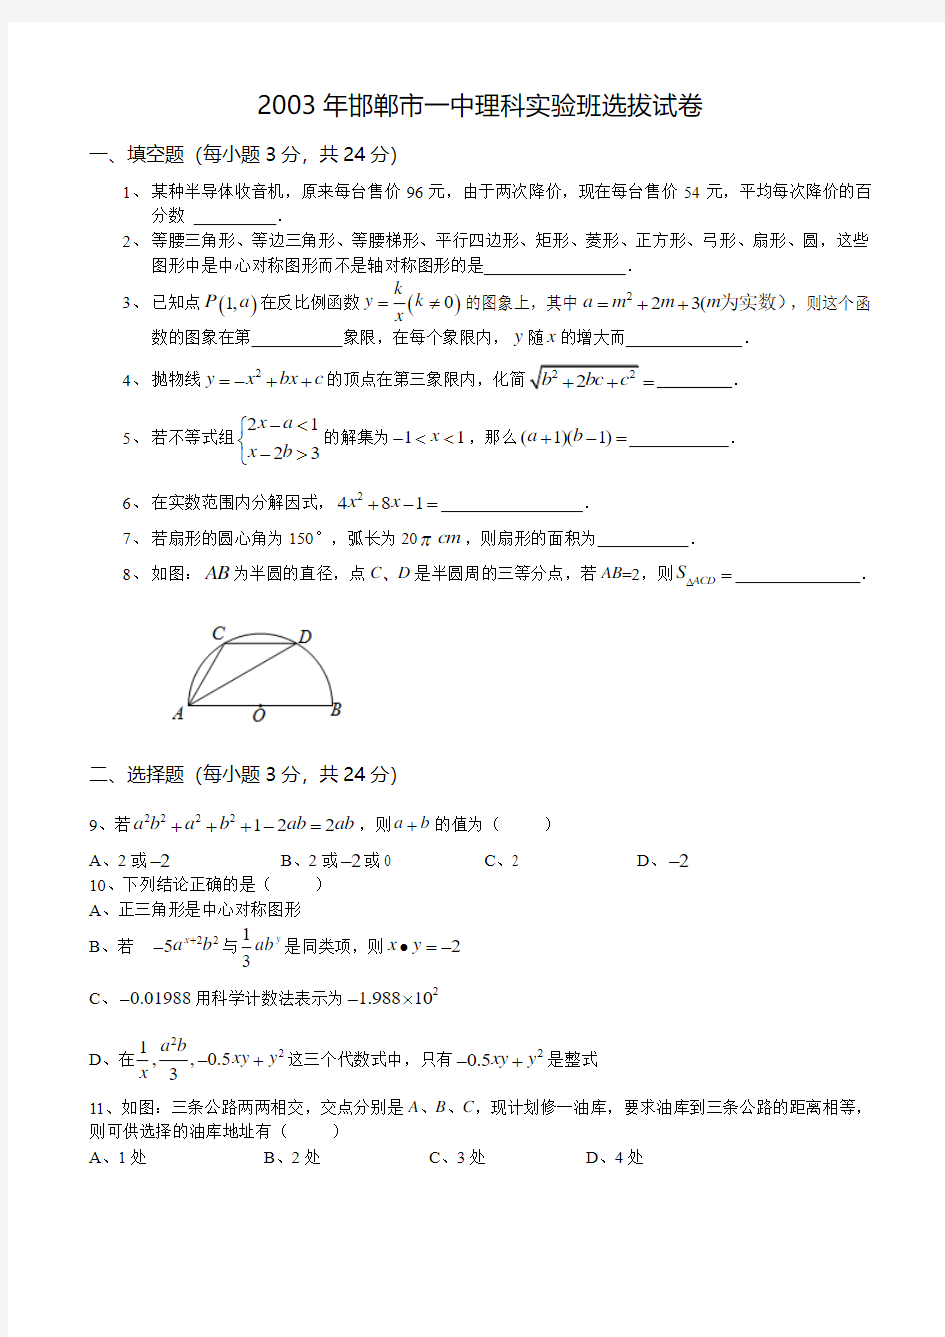 2003年邯郸市一中理科实验班选拔数学试题